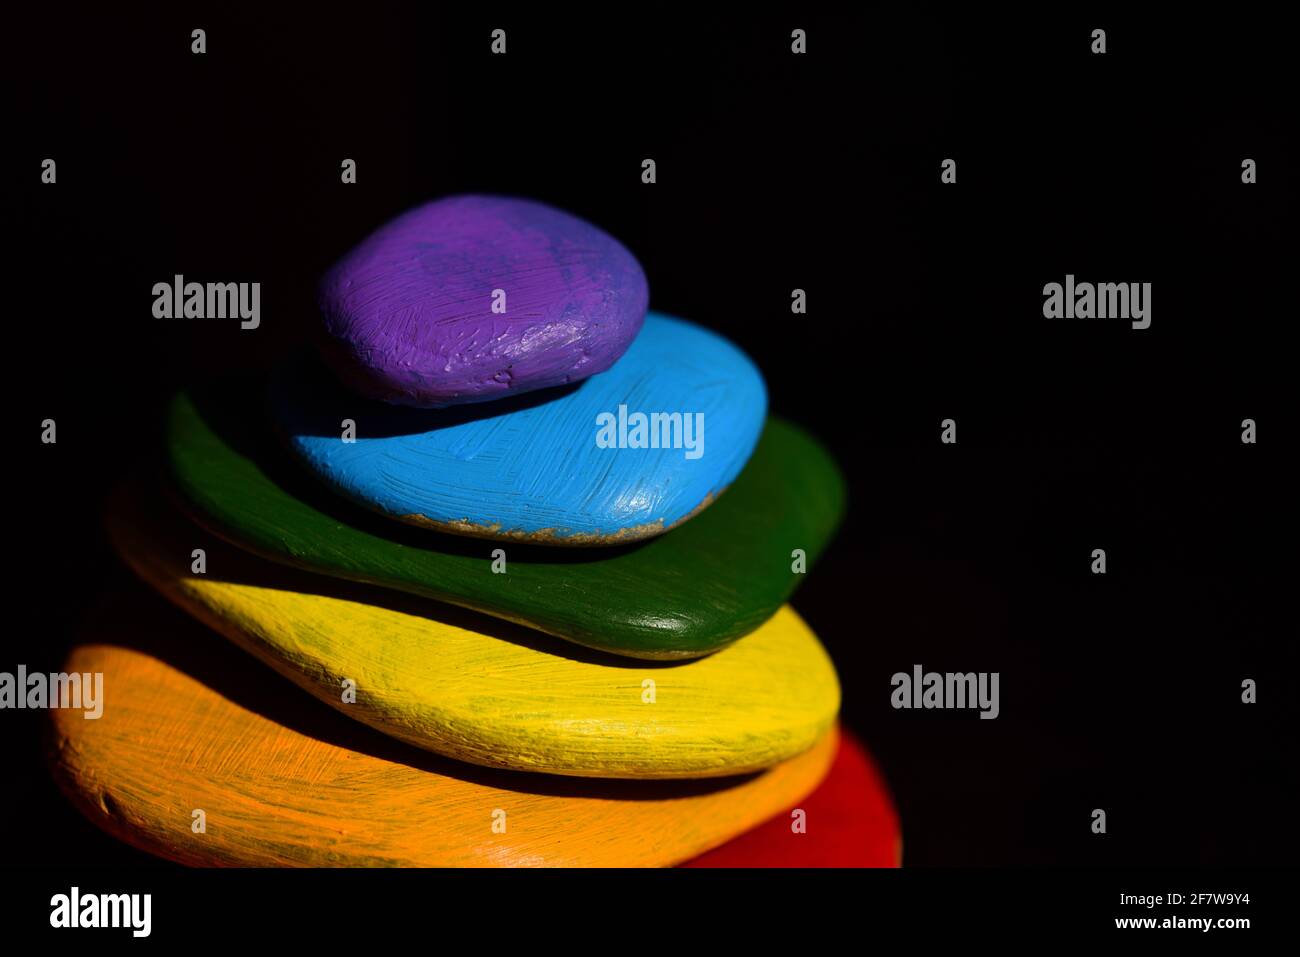 Mehrere bunte Kieselsteine, die in Regenbogenfarben gemalt sind, liegen darauf Übereinander vor einem dunklen Hintergrund Stockfoto